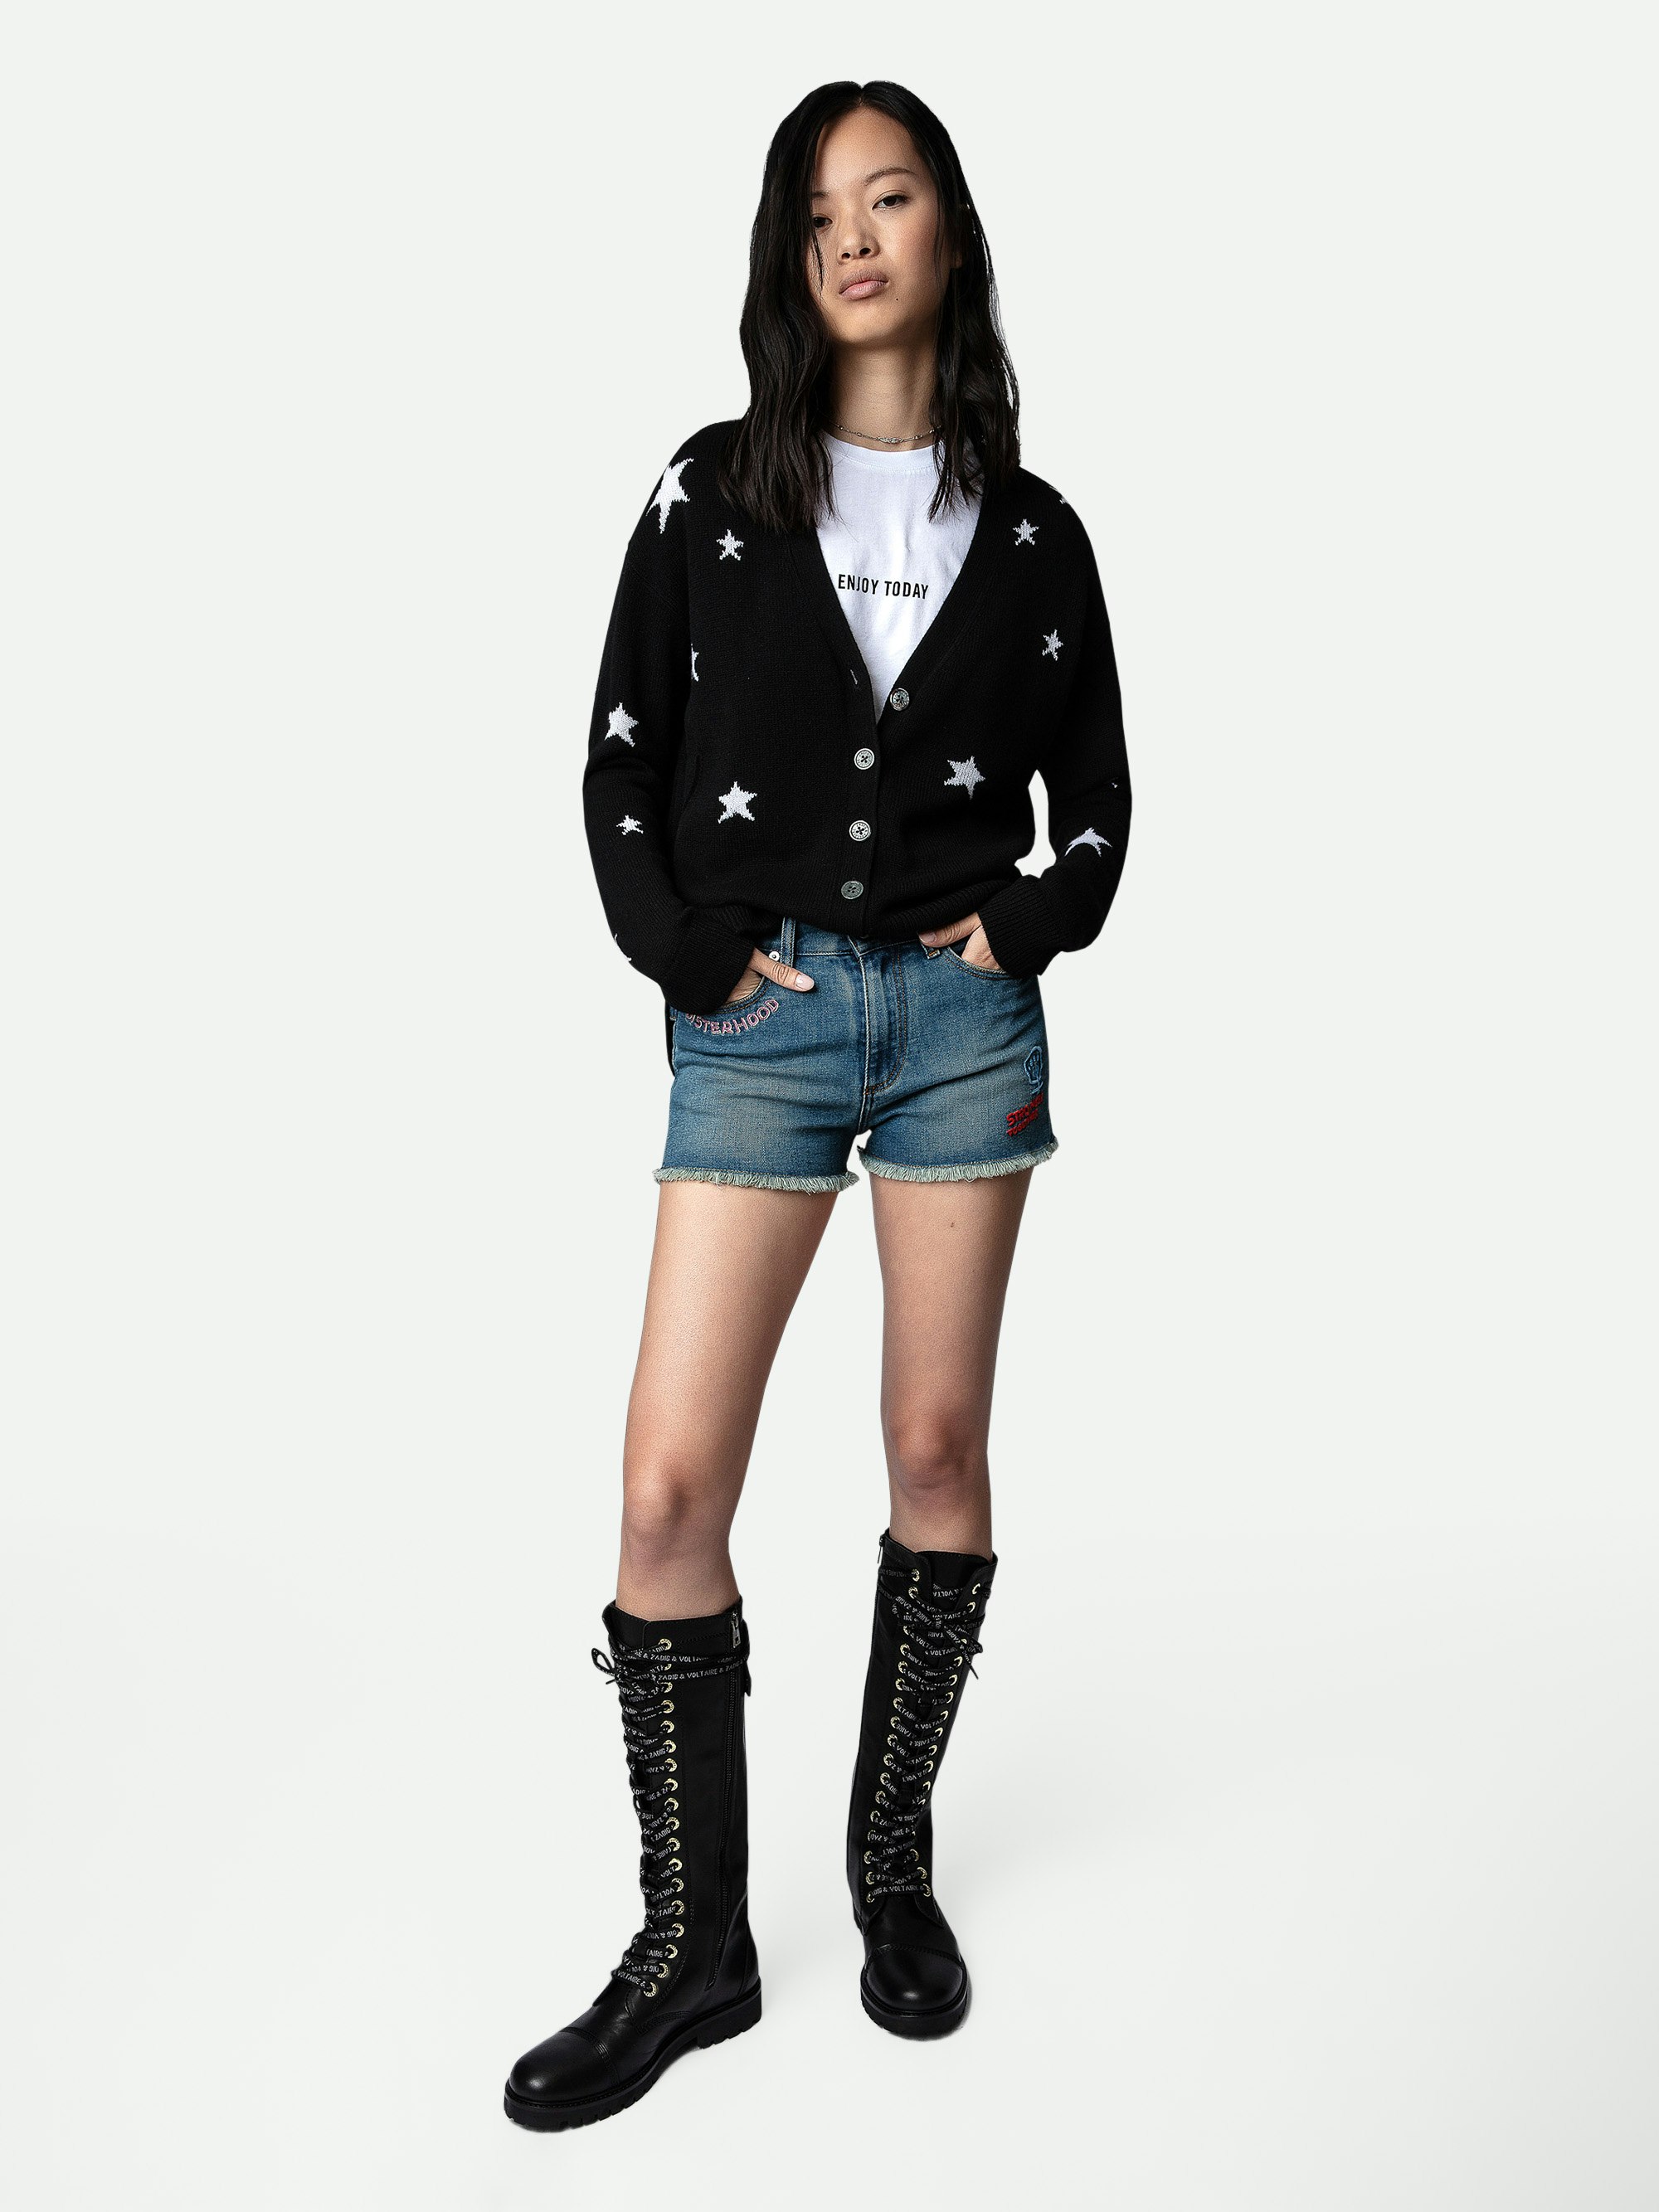 Cardigan Mirka Stars 100%  Cashmere - Cardigan in 100% cashmere nero con bottoni e stelle a contrasto donna